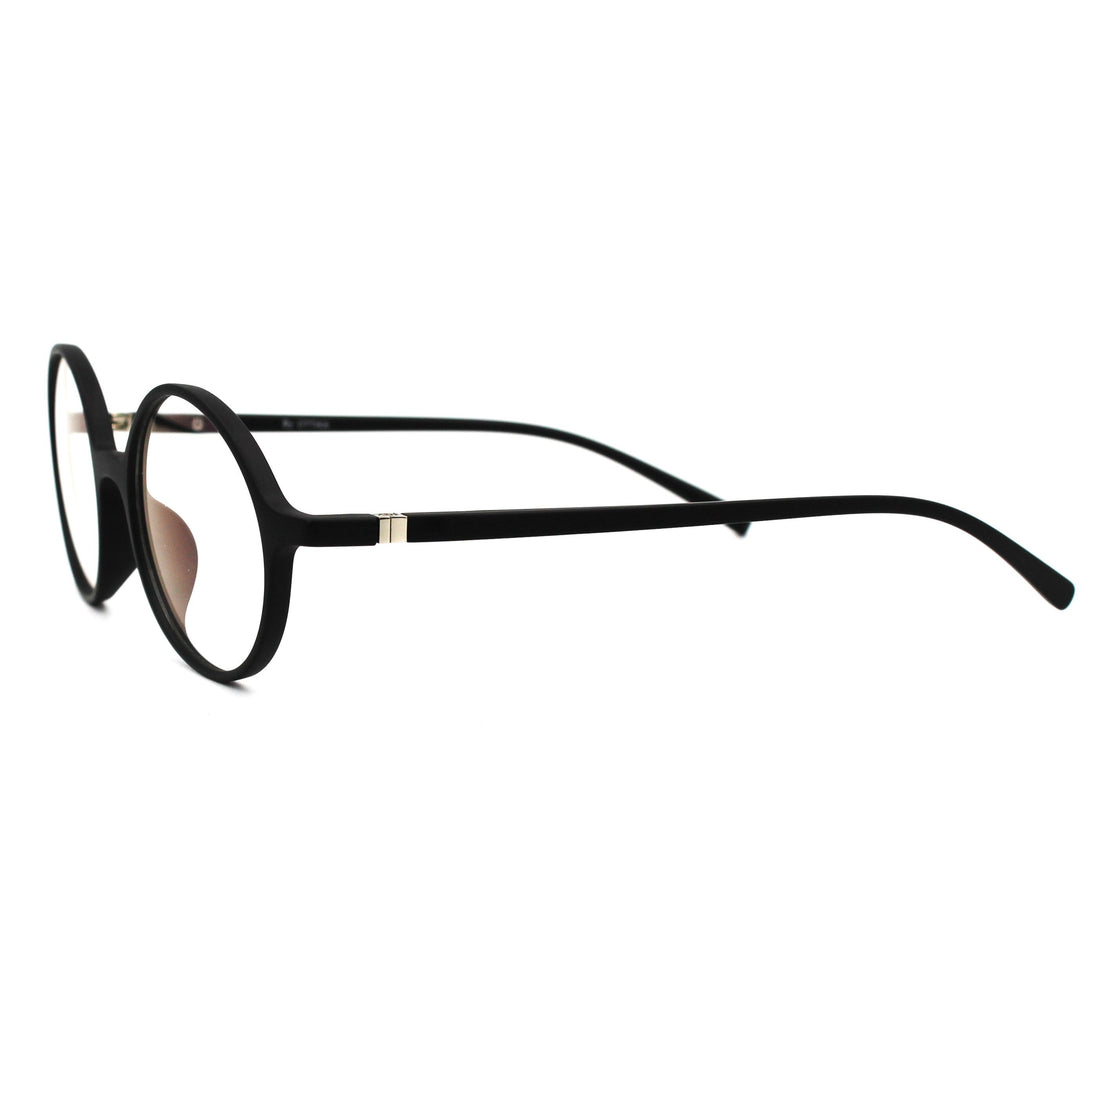 Ottika Care - Blue Light Blocking Glasses - Adult | Model R613